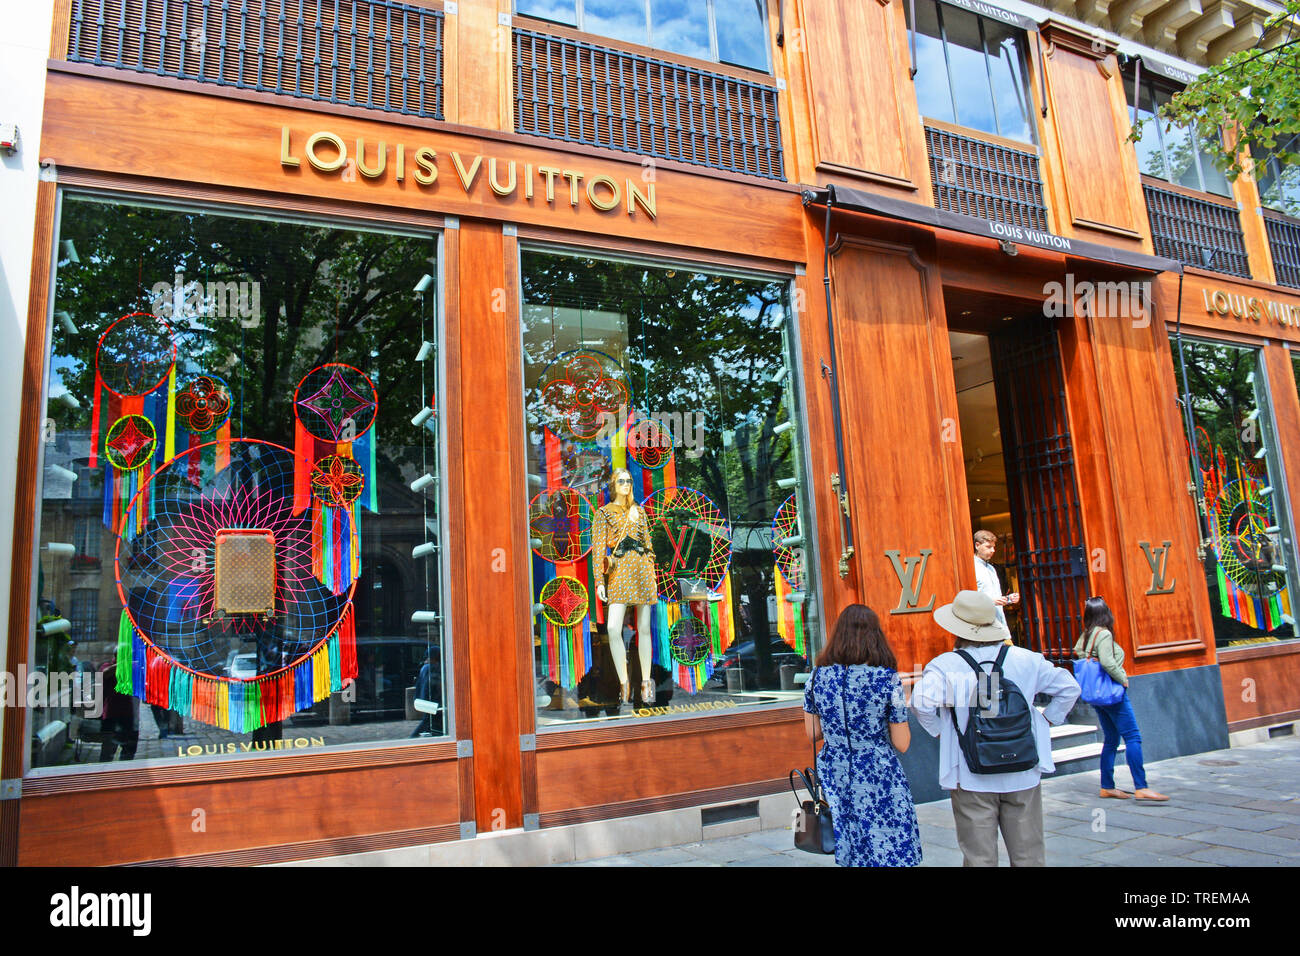 Louis Vuitton boutique, Saint-Germain-des-Prés, Latin quarter, Paris, Ile-de-France, France Stock Photo